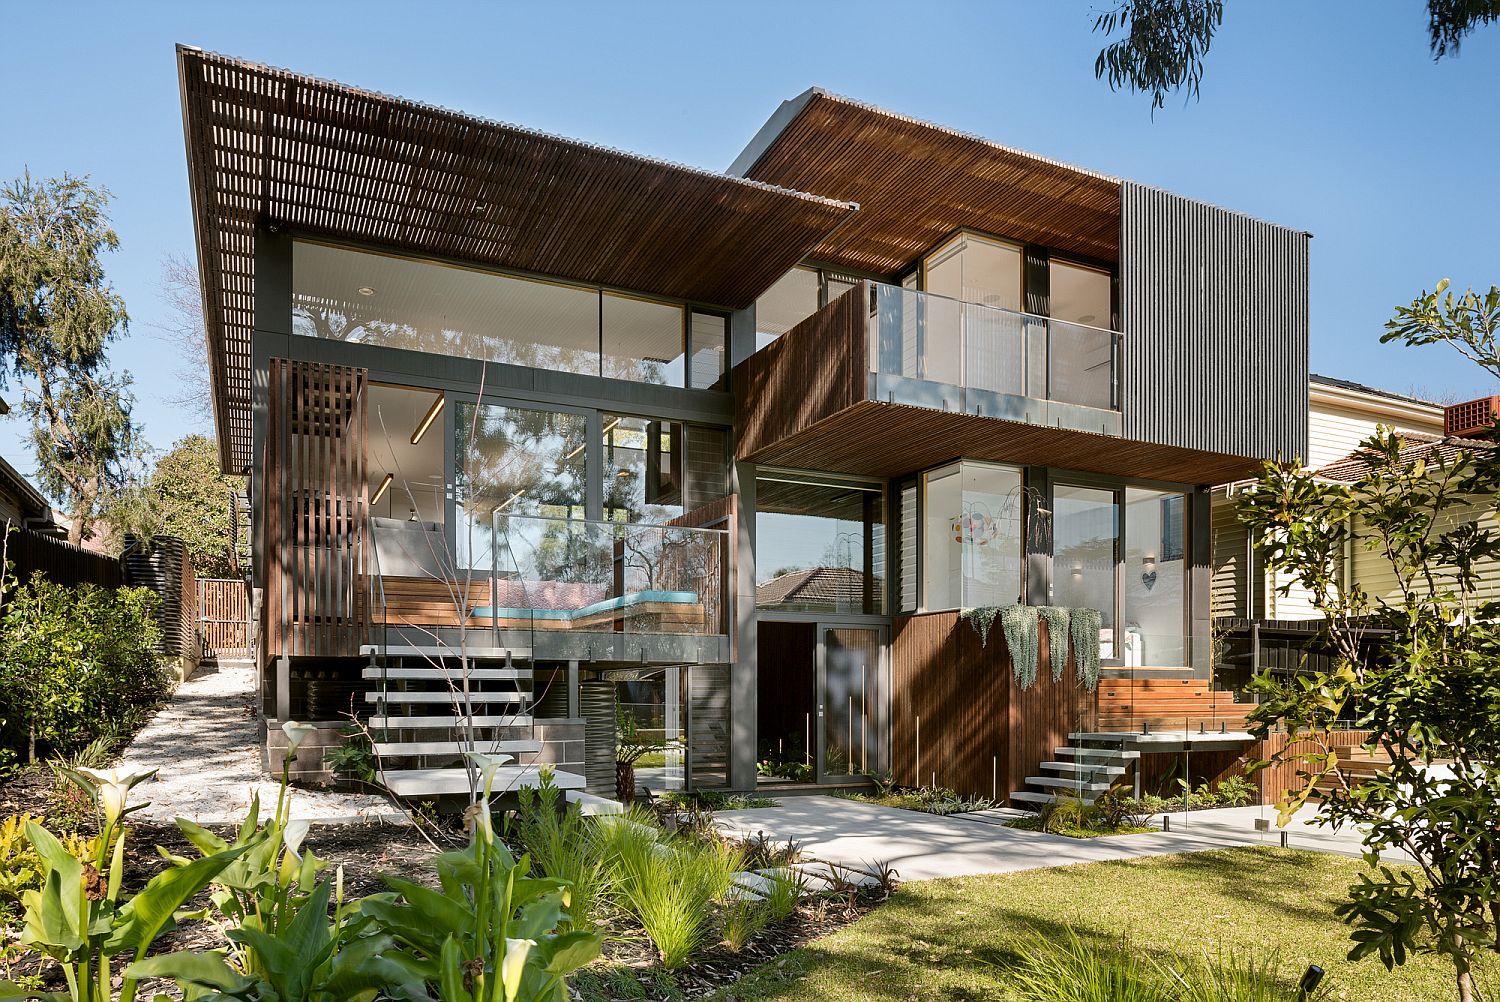 Rear-facade-of-the-home-opens-up-towards-the-garden